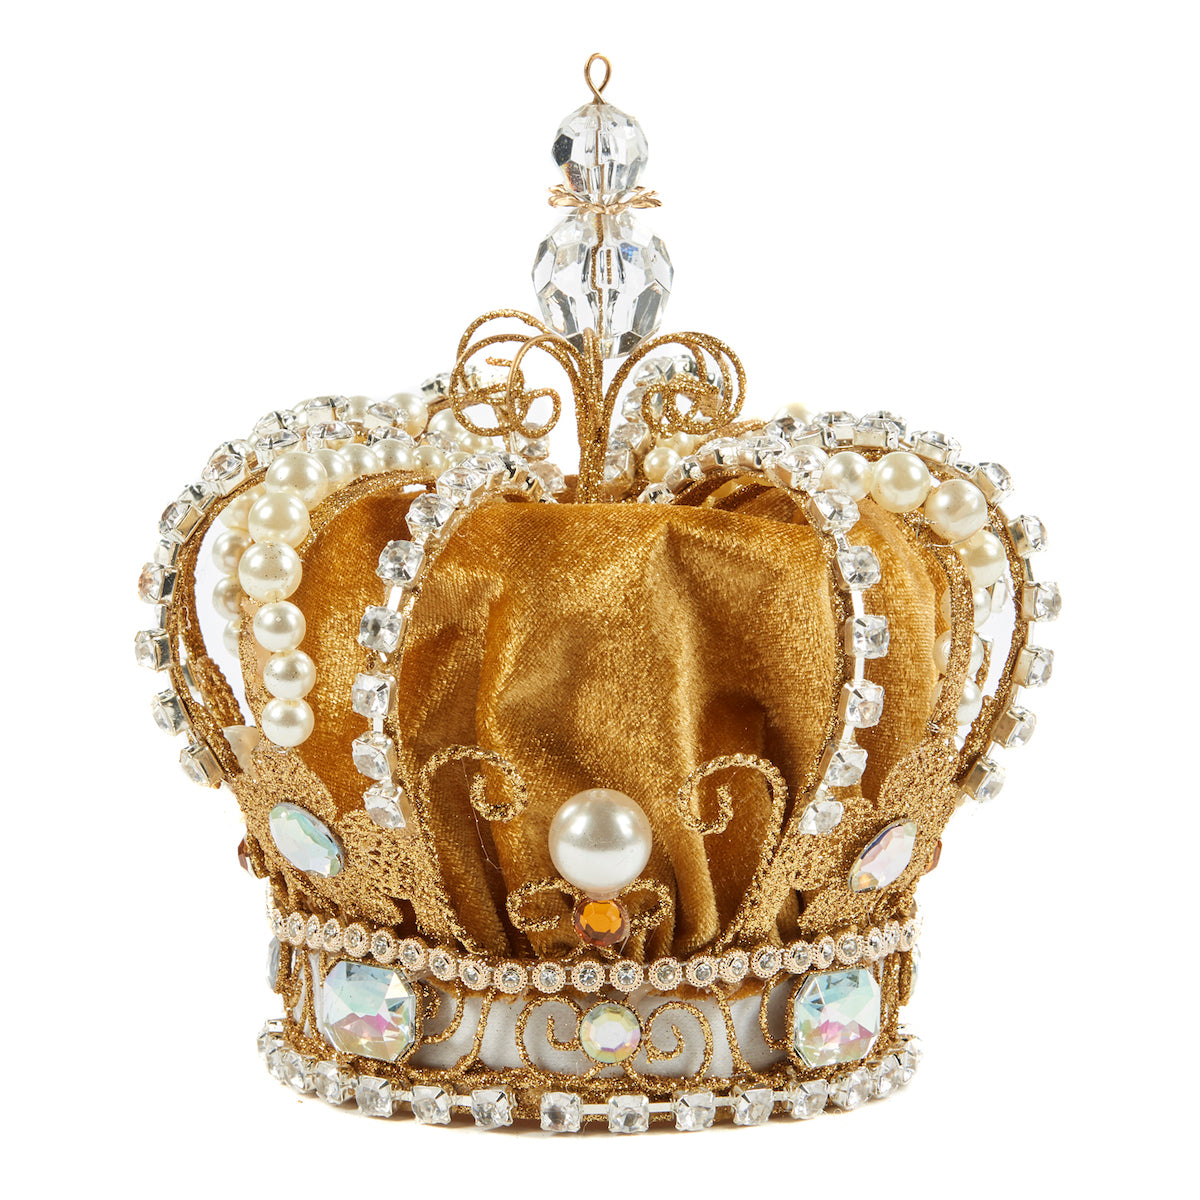 Baumspitze - Crown aus Samt und Metall, Farbe Gelb  - 20cm